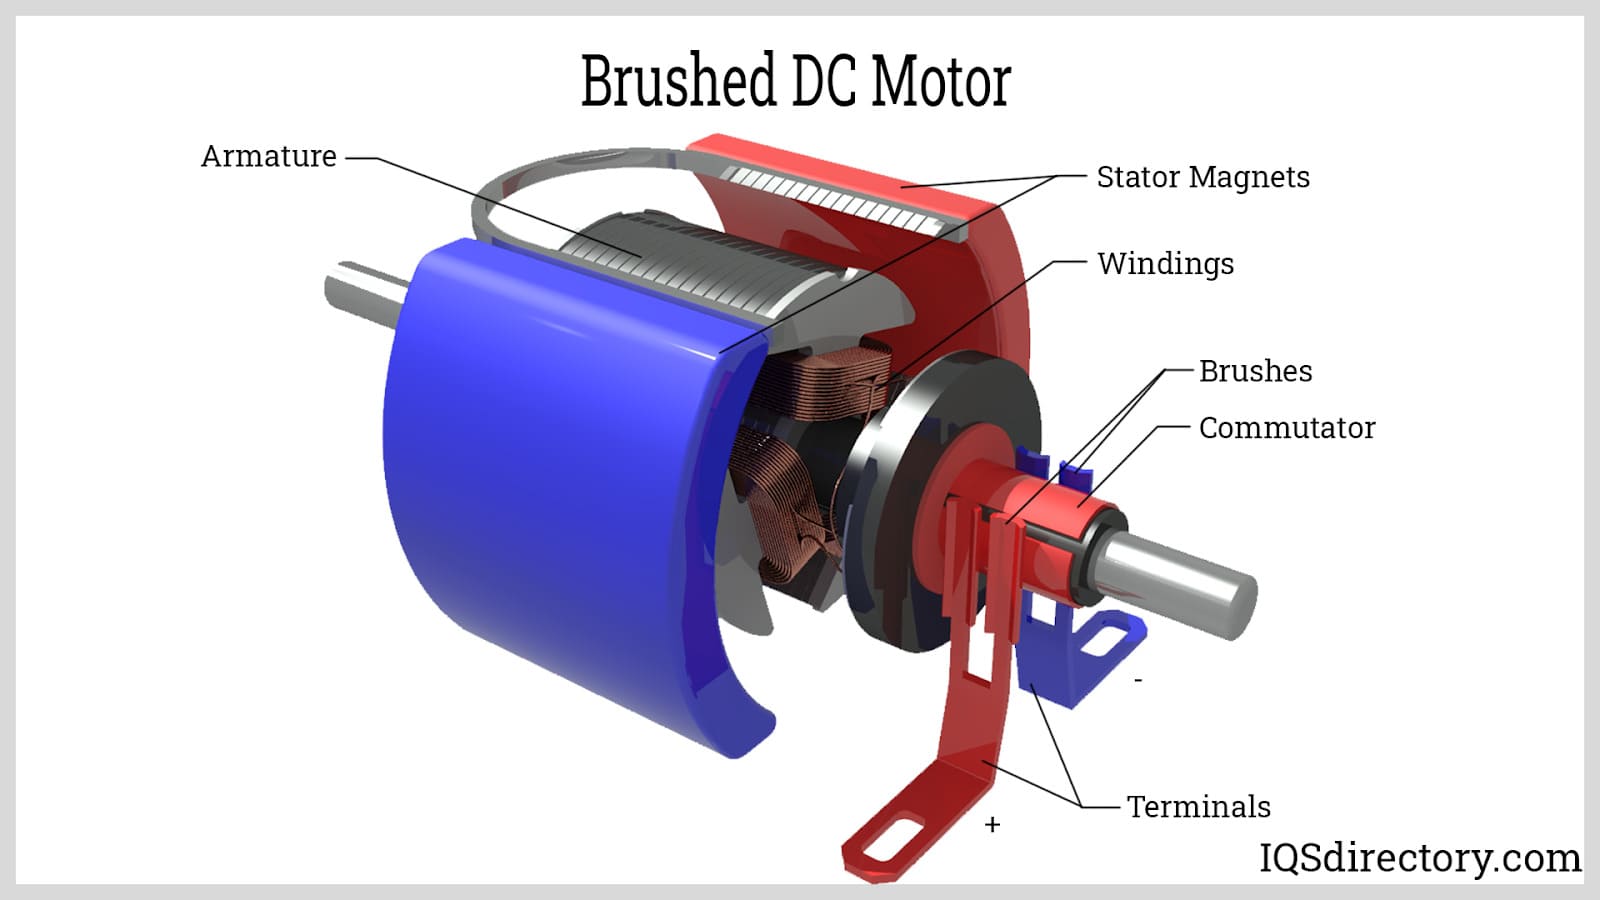 Brushed DC Motor